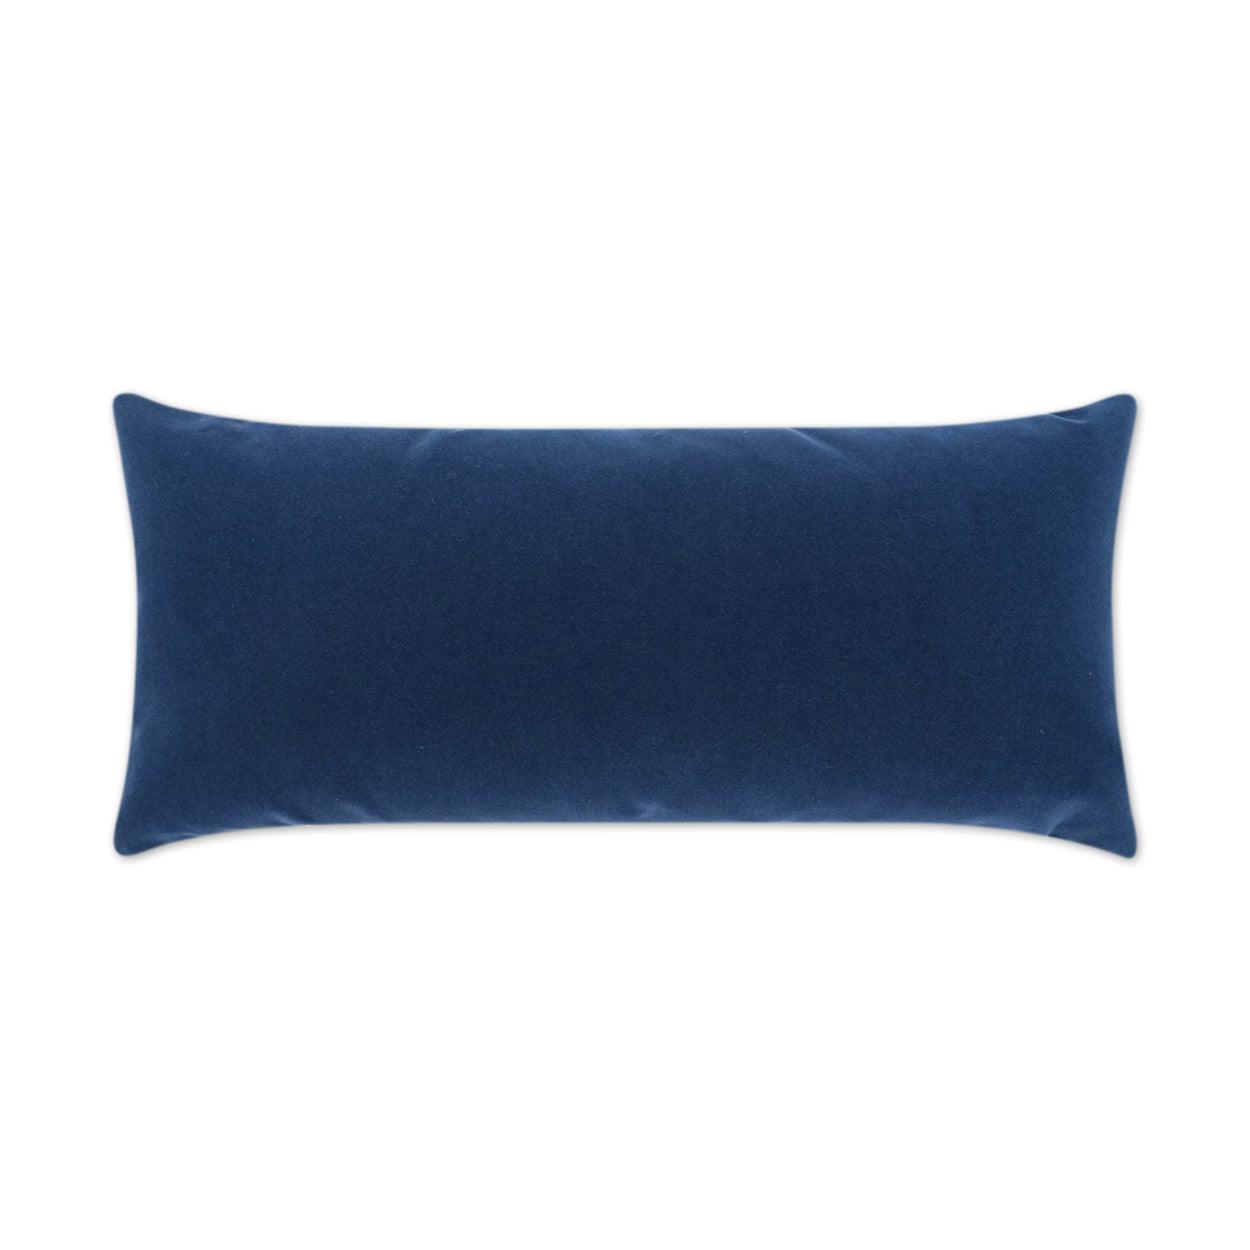 LOOMLAN Outdoor - Outdoor Sundance Duo Lumbar Pillow - Navy - Outdoor Pillows